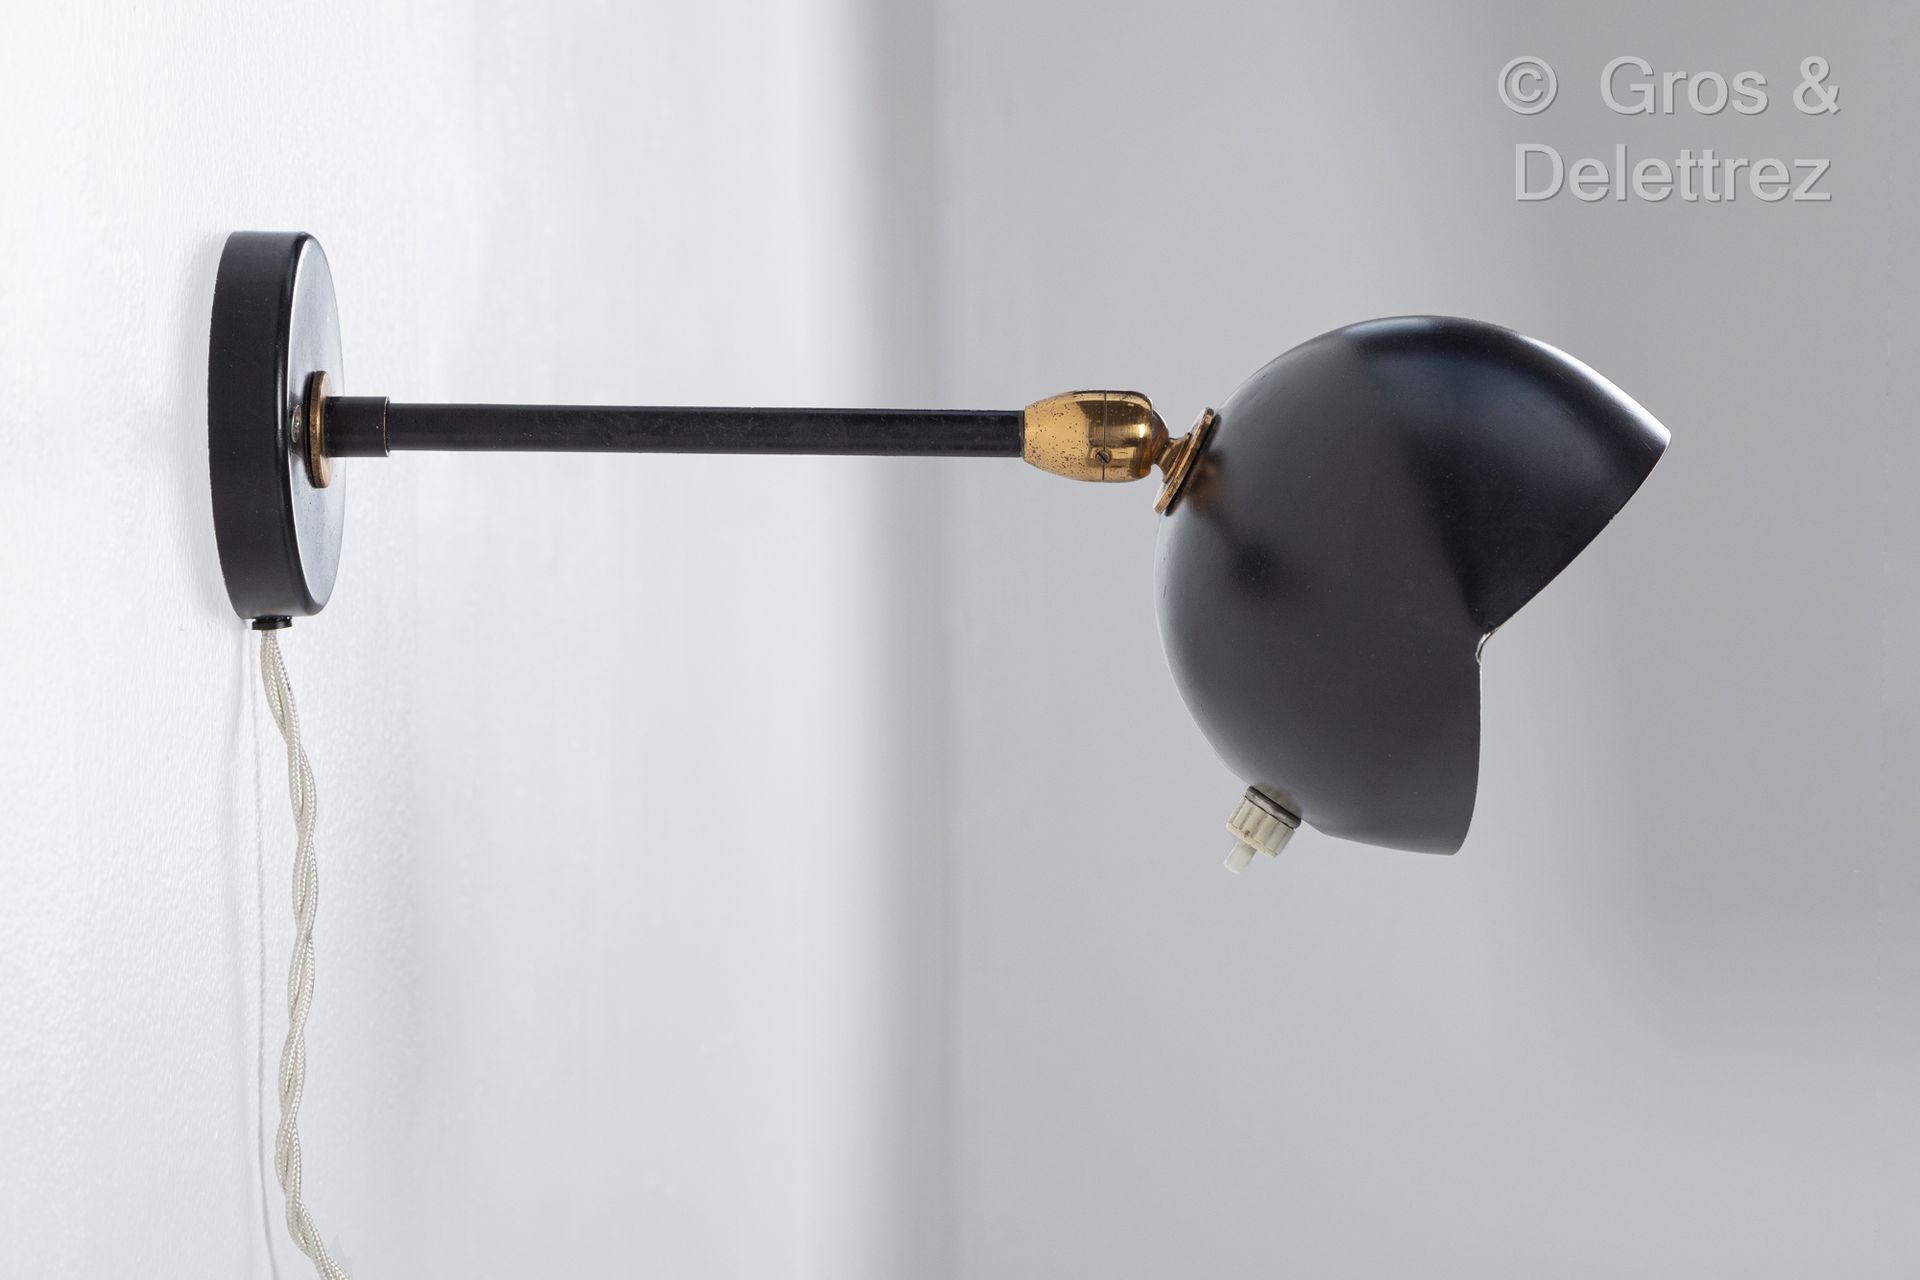 Null 谢尔盖-穆伊尔(1922-1988)
壁灯，"OEil "模型，黑漆金属板，有一个熏黑的管状臂和可旋转的锥形反射器。奶油电木旋钮。
创建于1956年。&hellip;